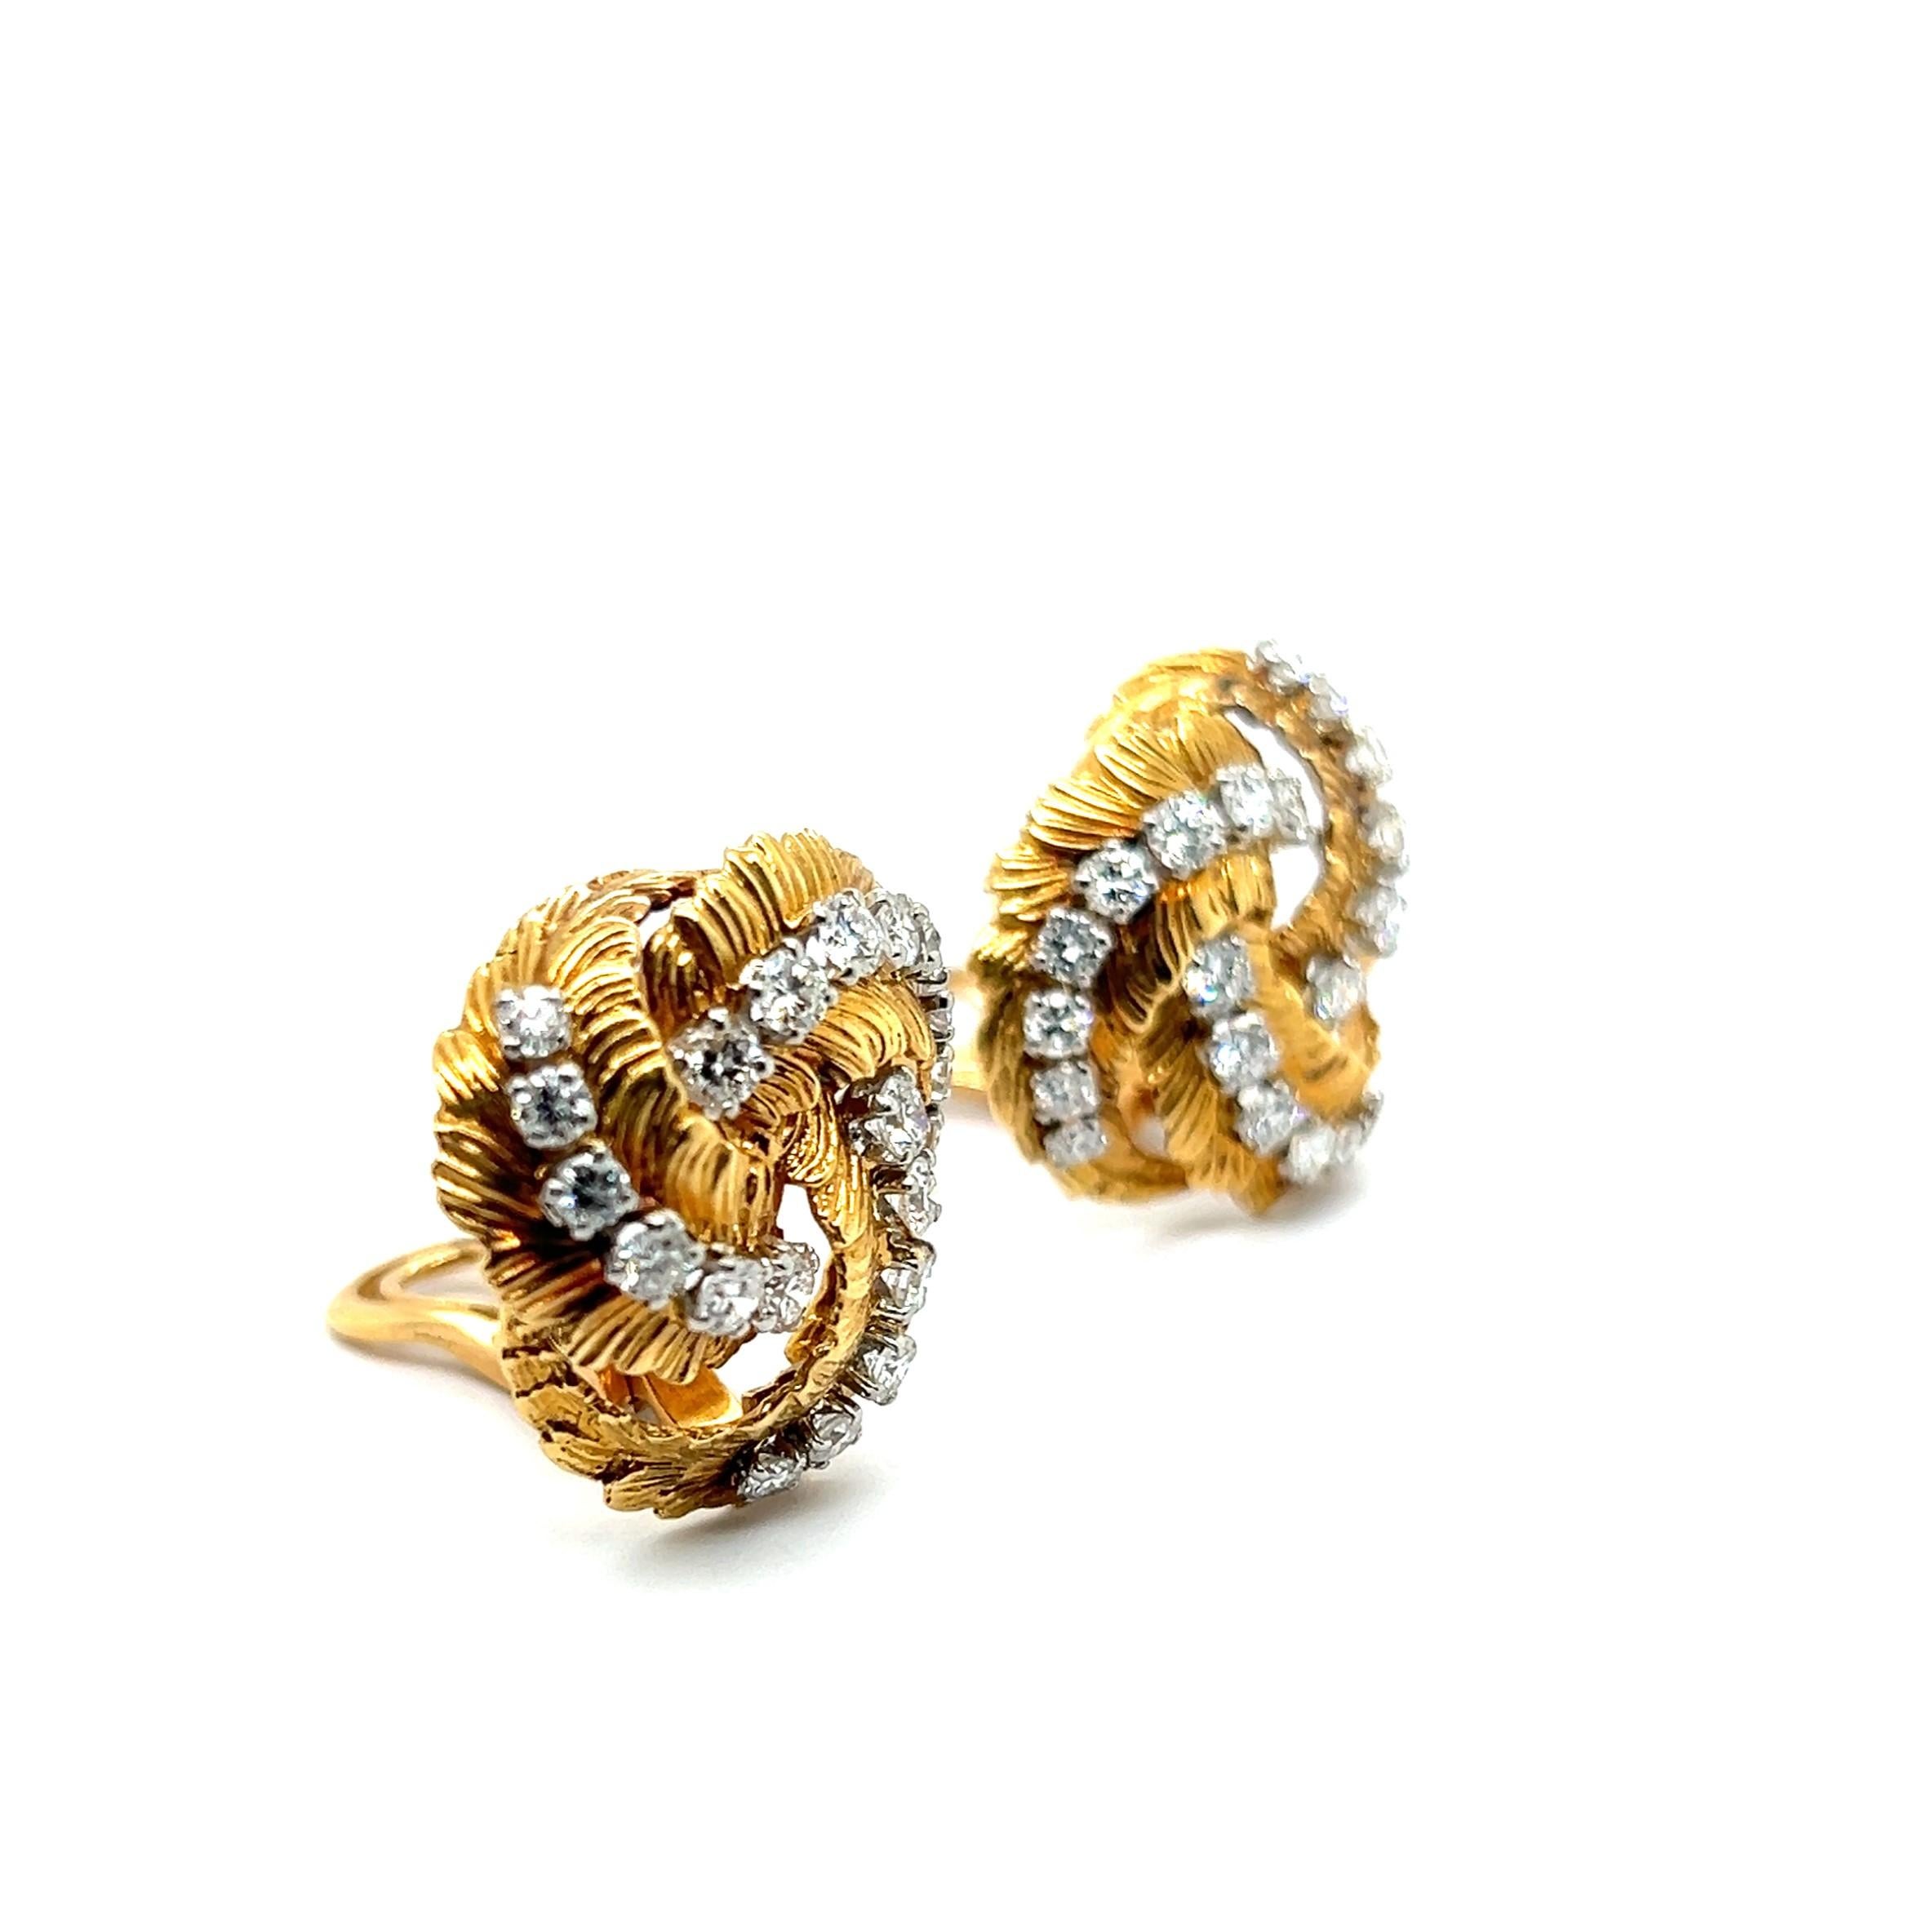 Earrings with Diamonds in 18 Karat Yellow Gold by Gübelin For Sale 2